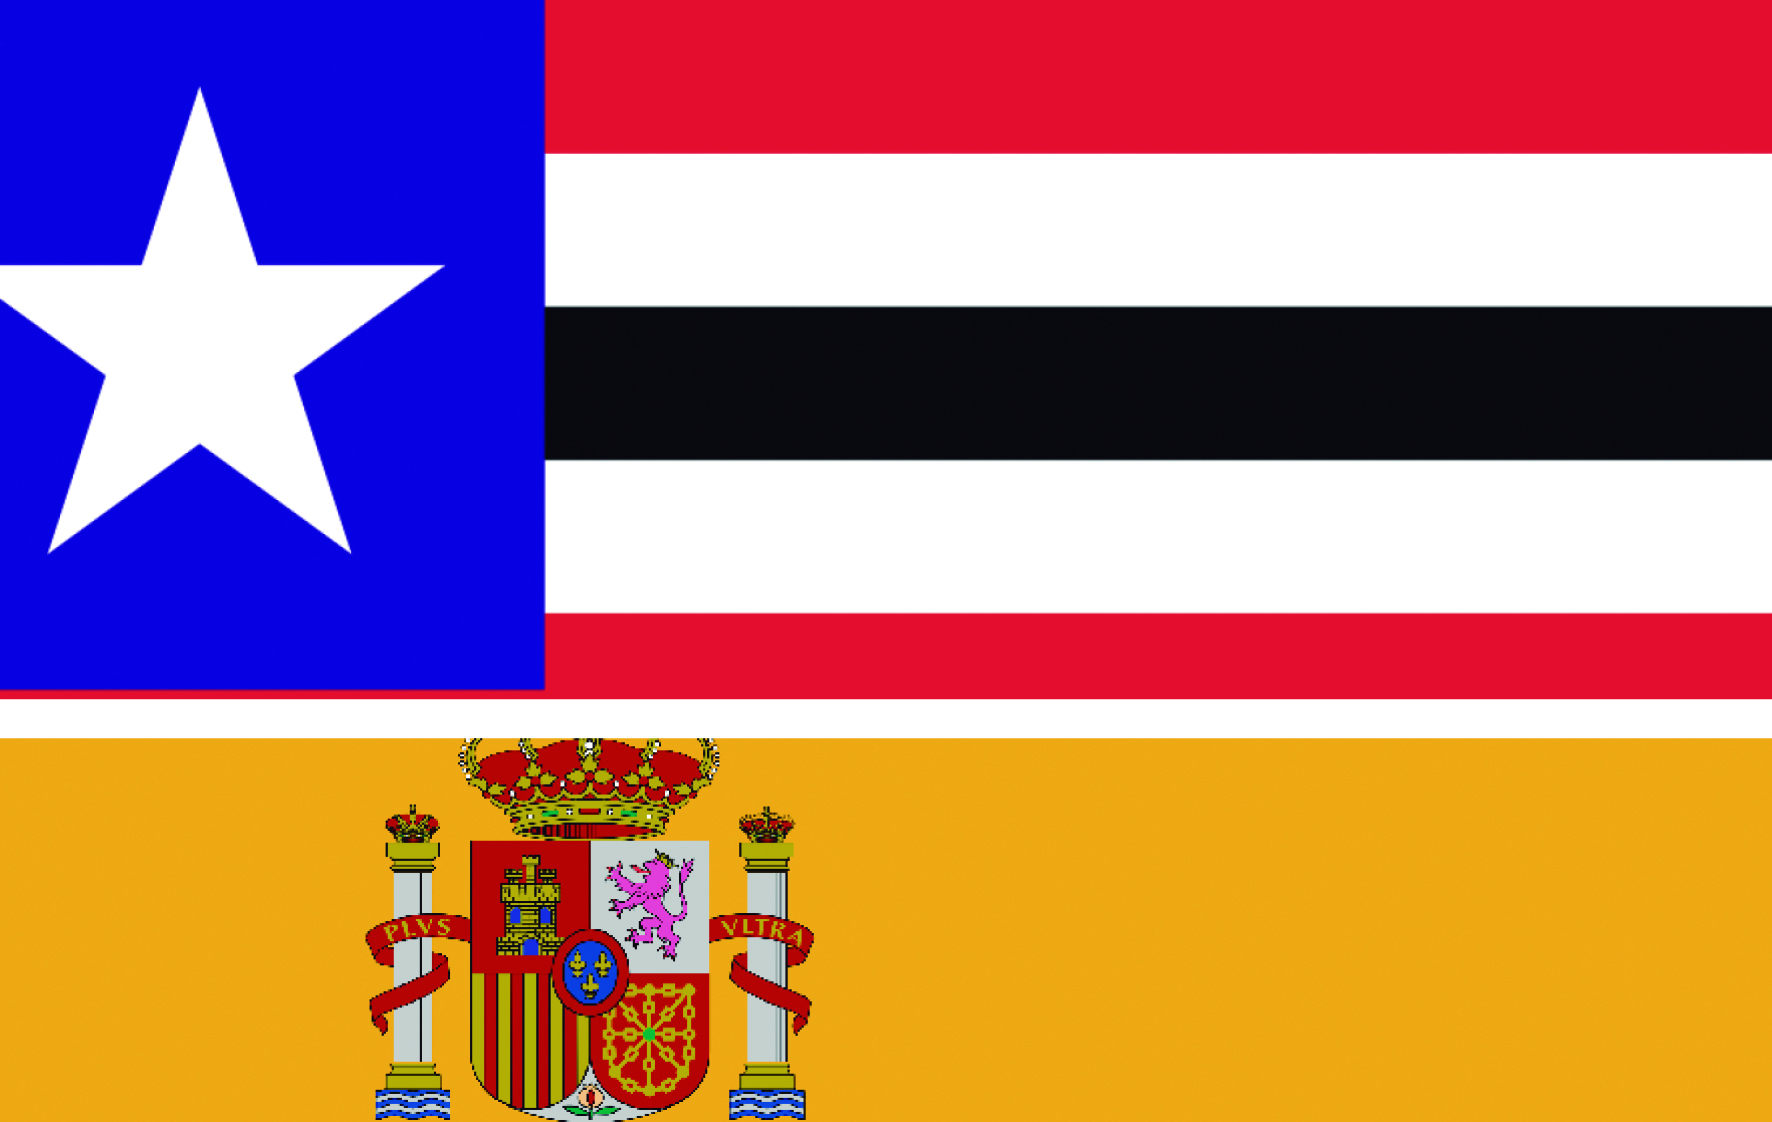 bandeira (maranhao e espanha)